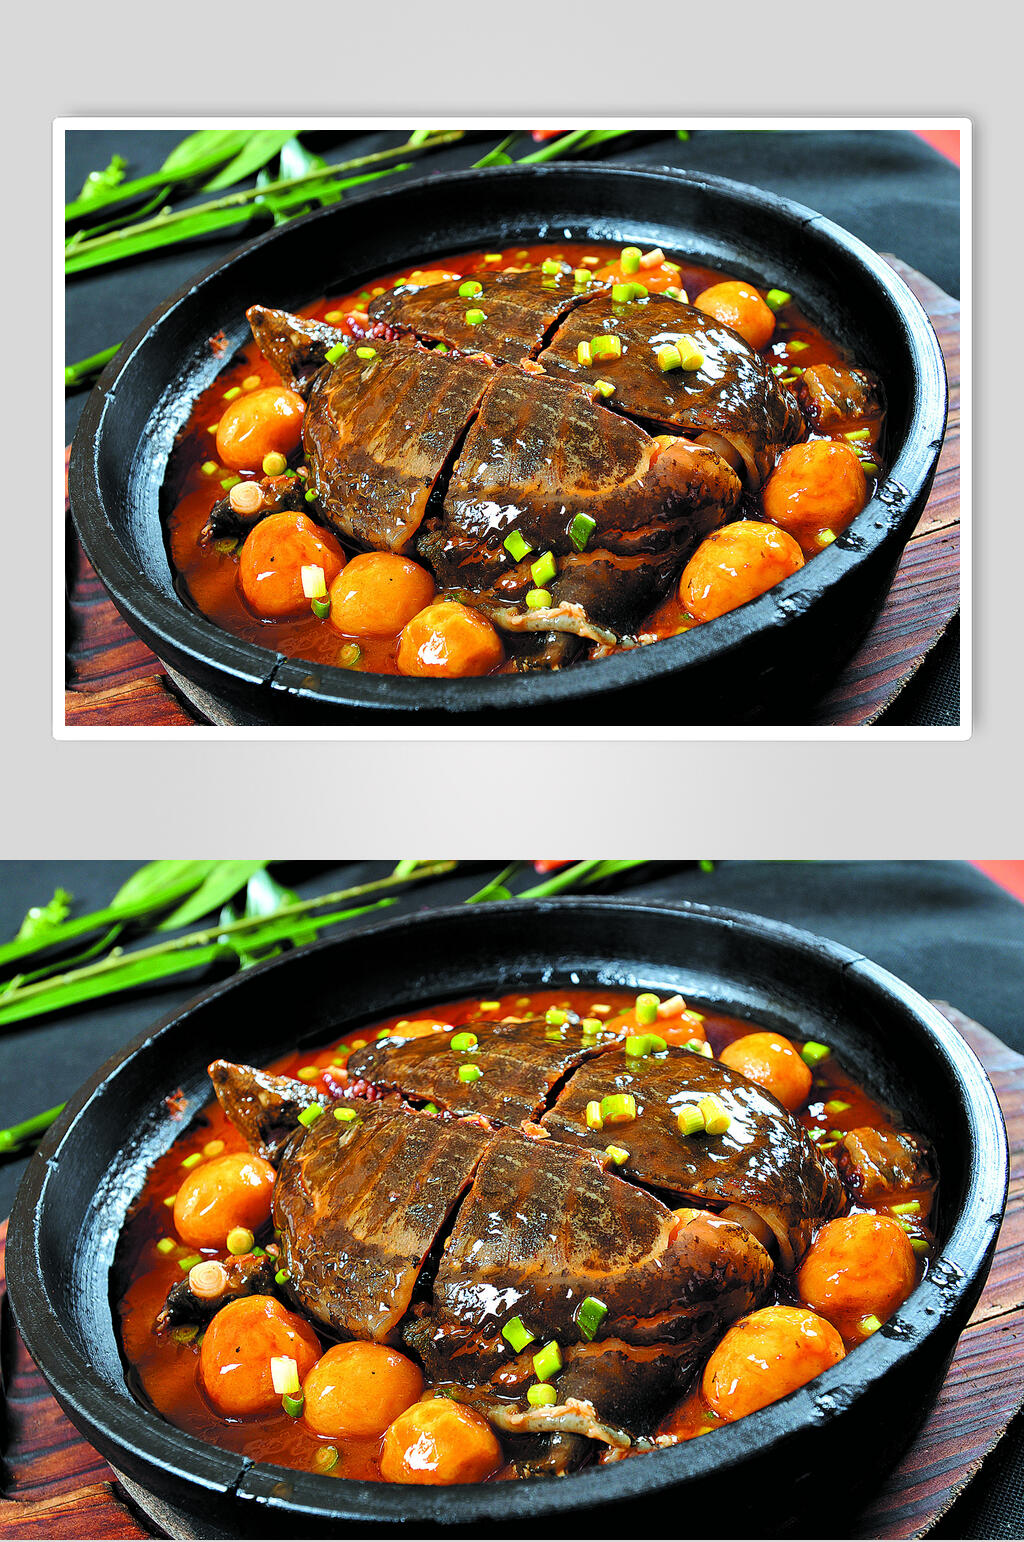 鲜香美味石锅焖甲鱼食物图片